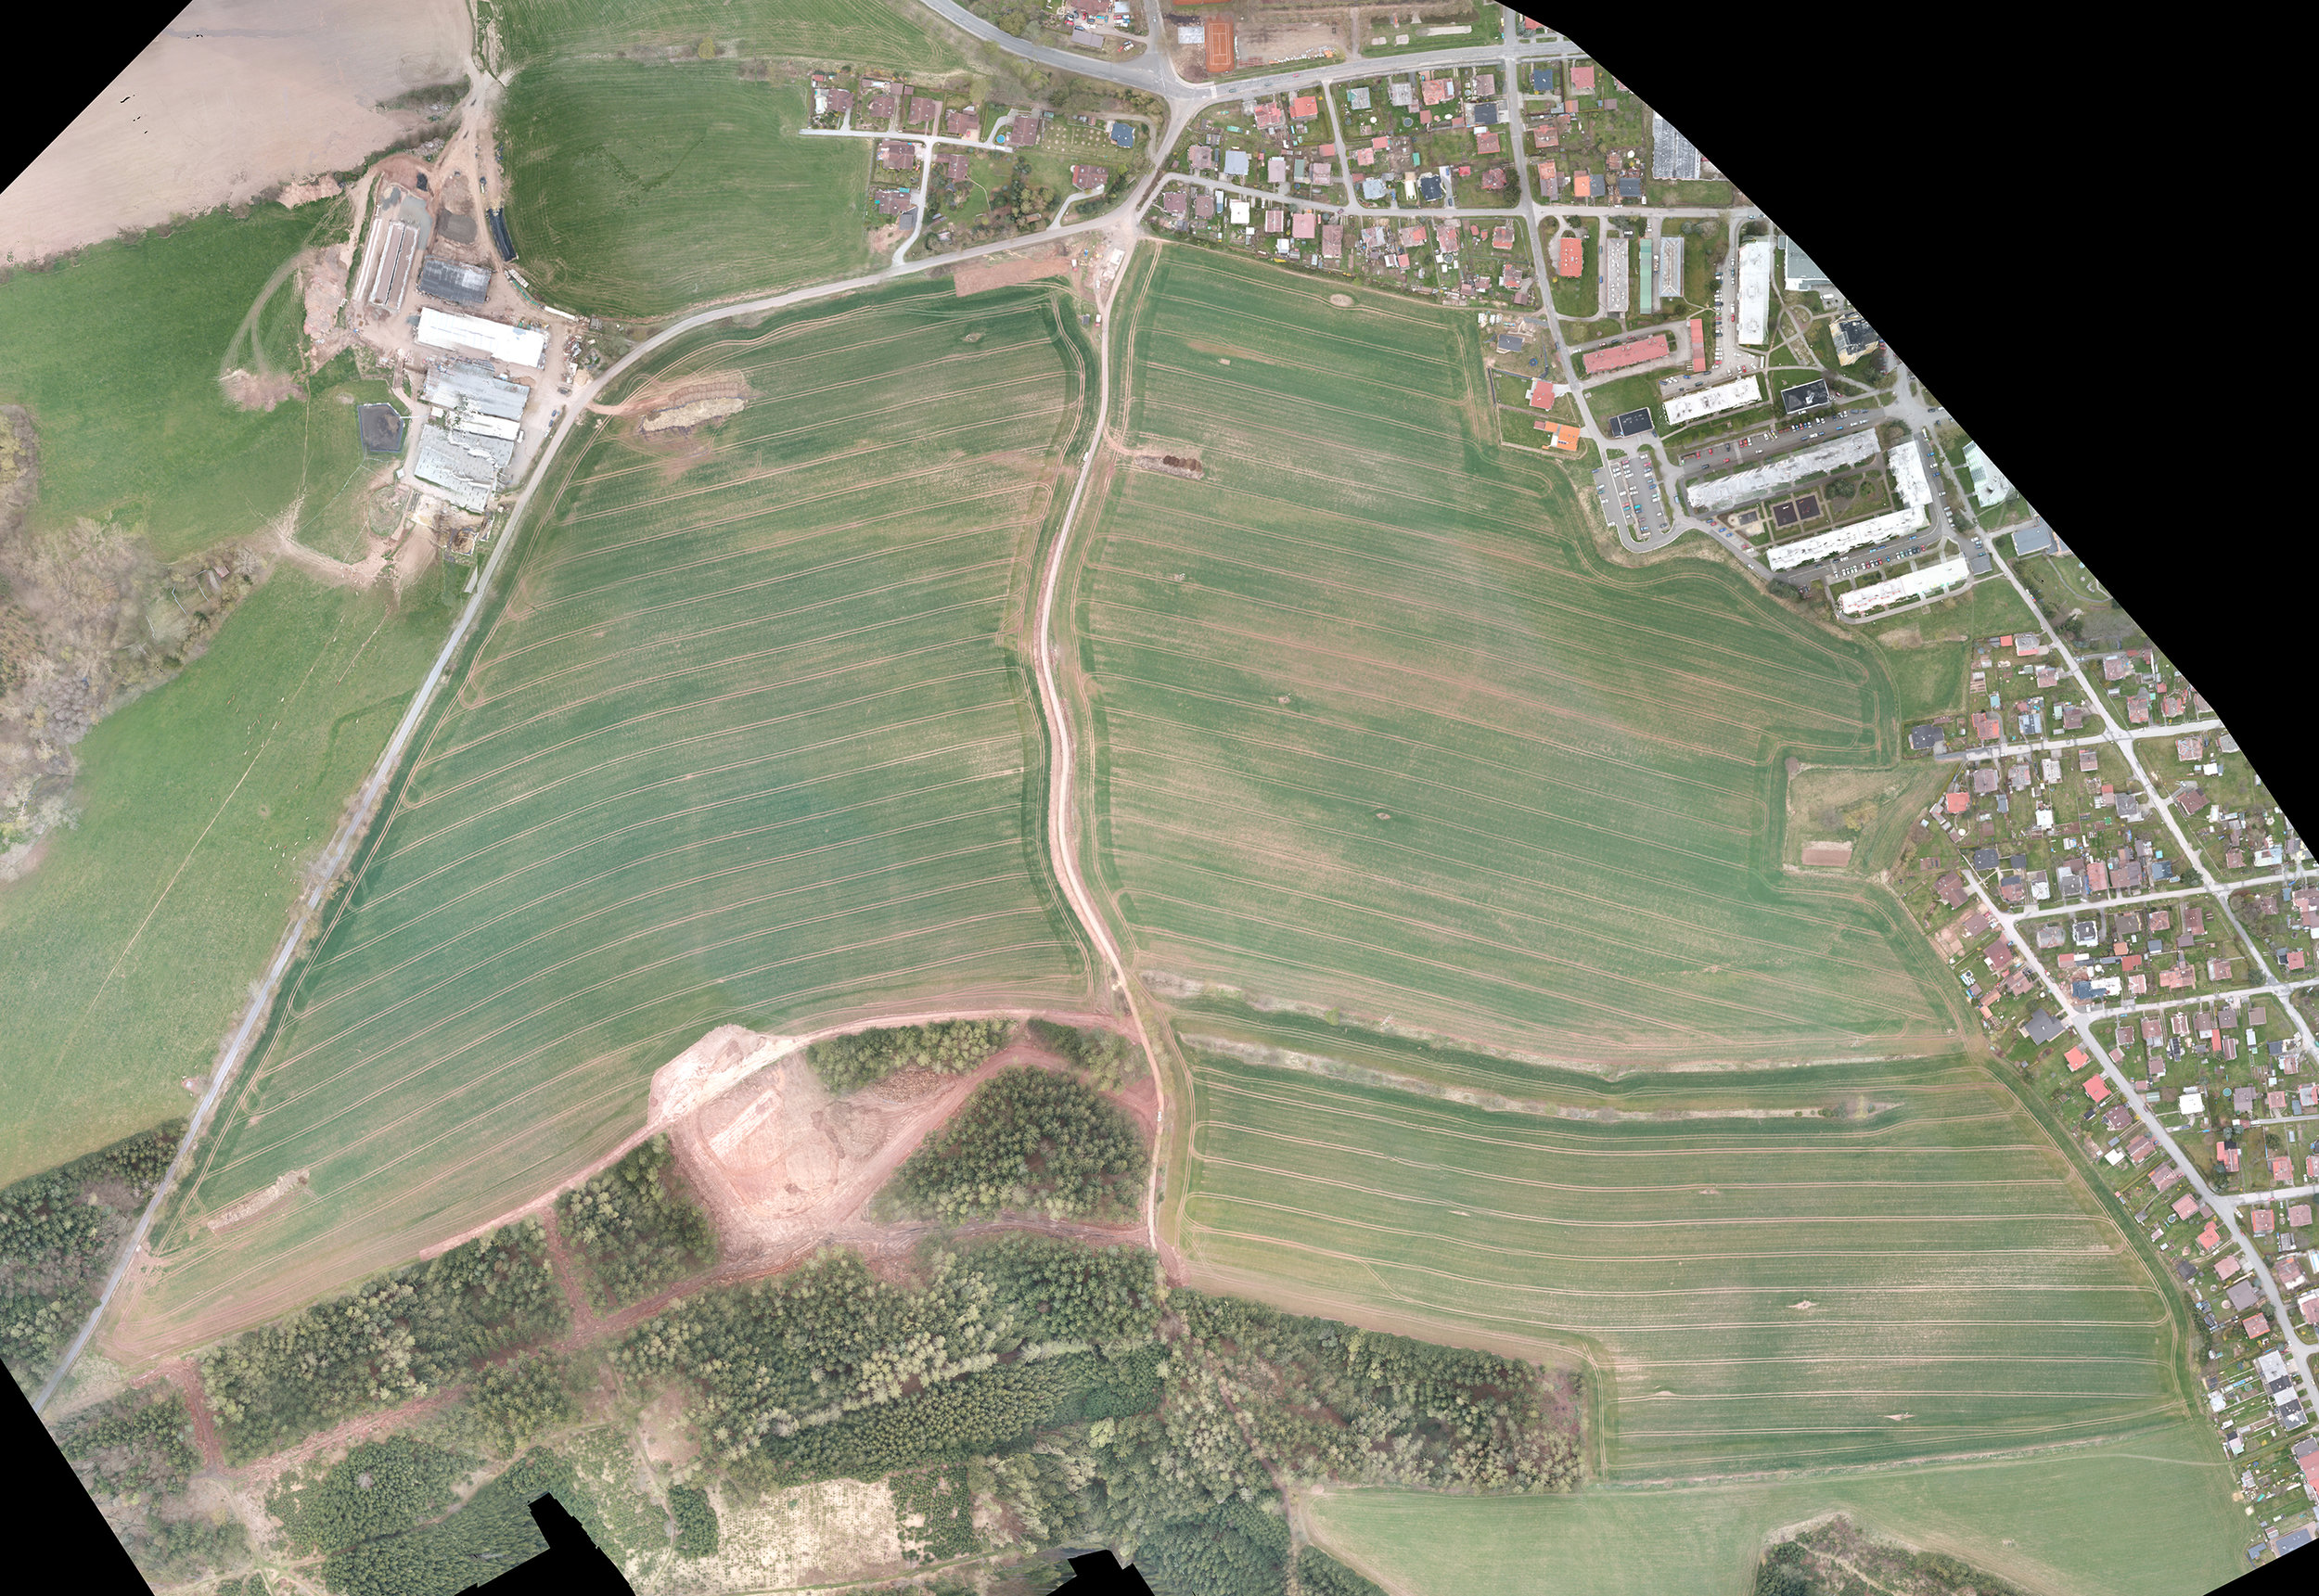 Drone image of farm fields